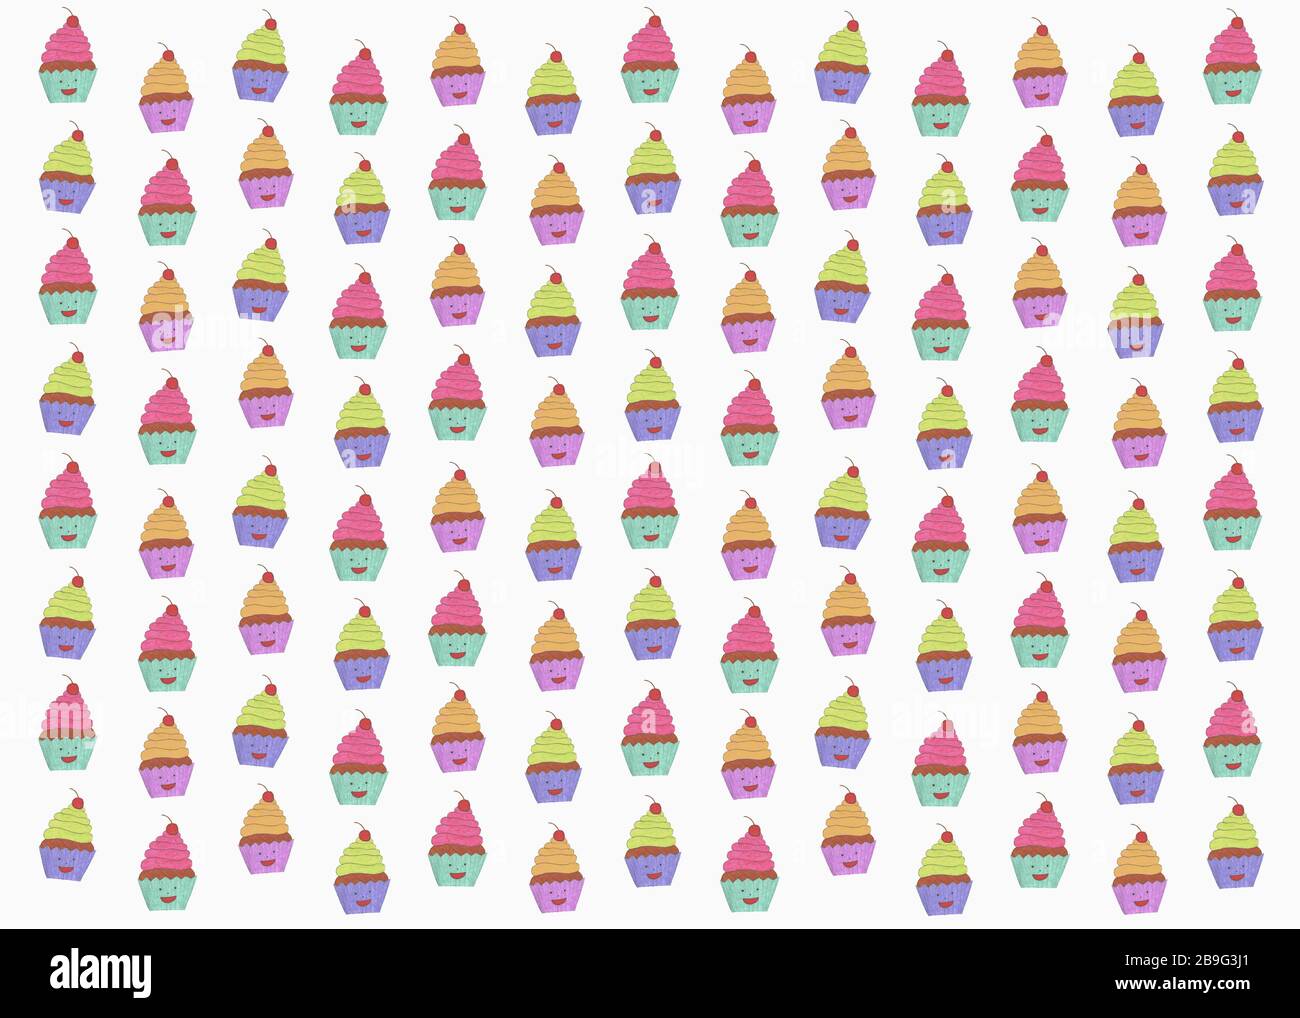 Abbildung anthropomorpher Cupcakes auf weißem Hintergrund Stockfoto